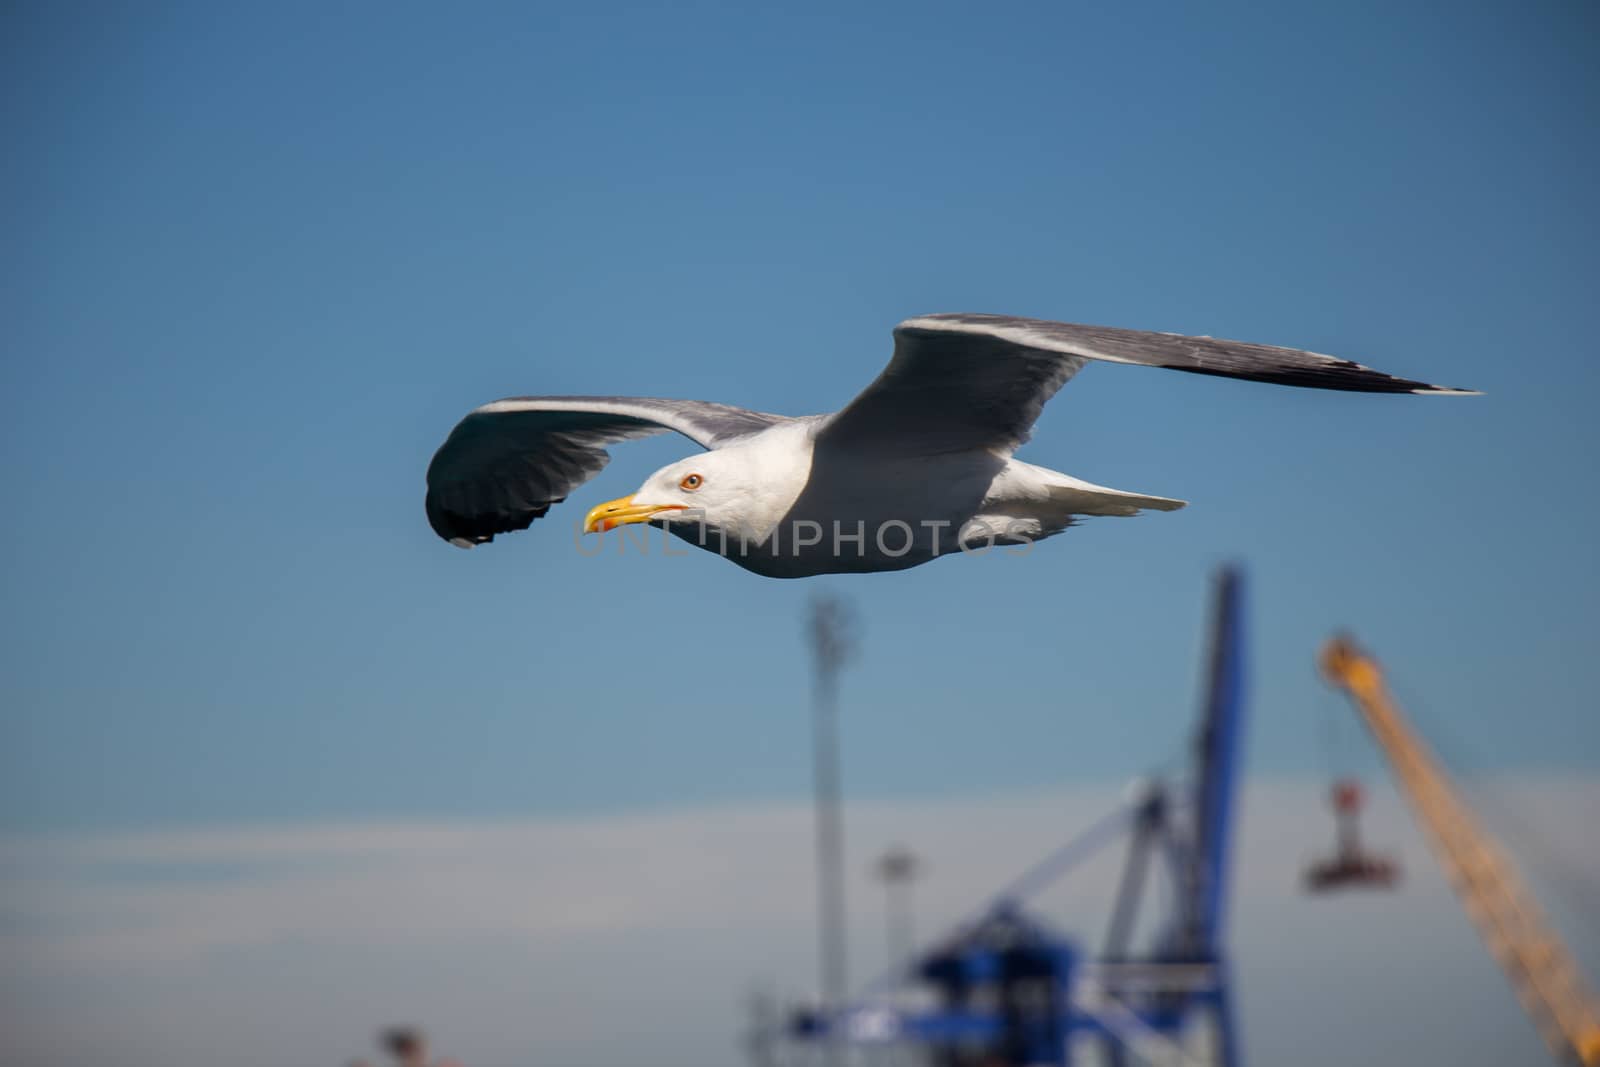 Single seagull flying in blue a sky by berkay